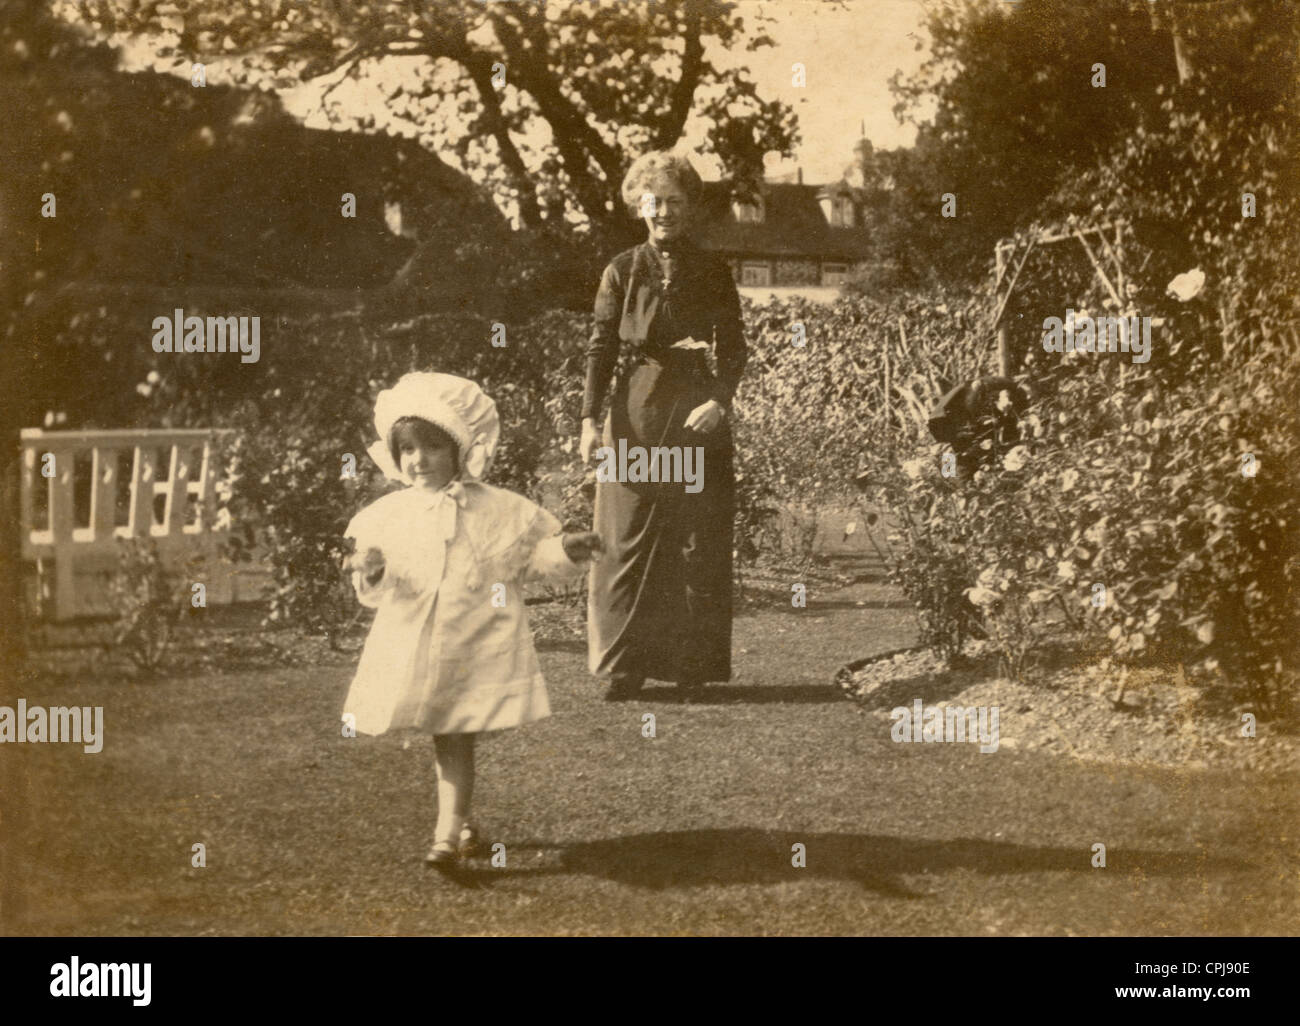 Original Edwardian Foto von Nursery Krankenschwester oder Großeltern mit Kind in einem Garten während der Edwardian Periode, Anfang 1900, Großbritannien. Stockfoto